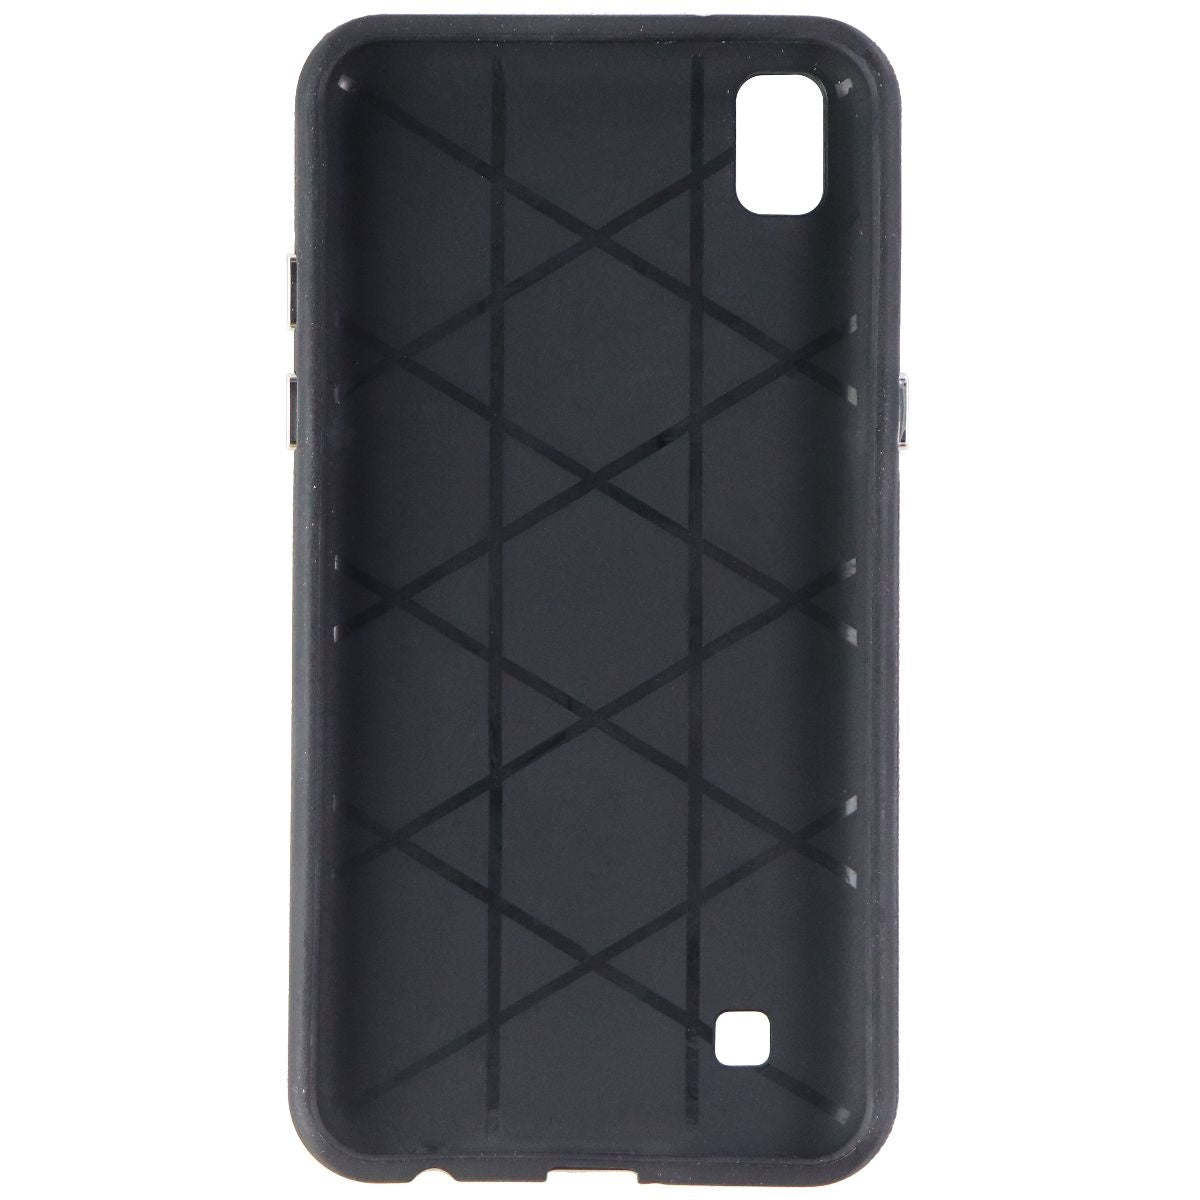 Avoca MobilePro Hardshell Case for LG X Power (2016 Model) - Black Cell Phone - Cases, Covers & Skins Avoca    - Simple Cell Bulk Wholesale Pricing - USA Seller